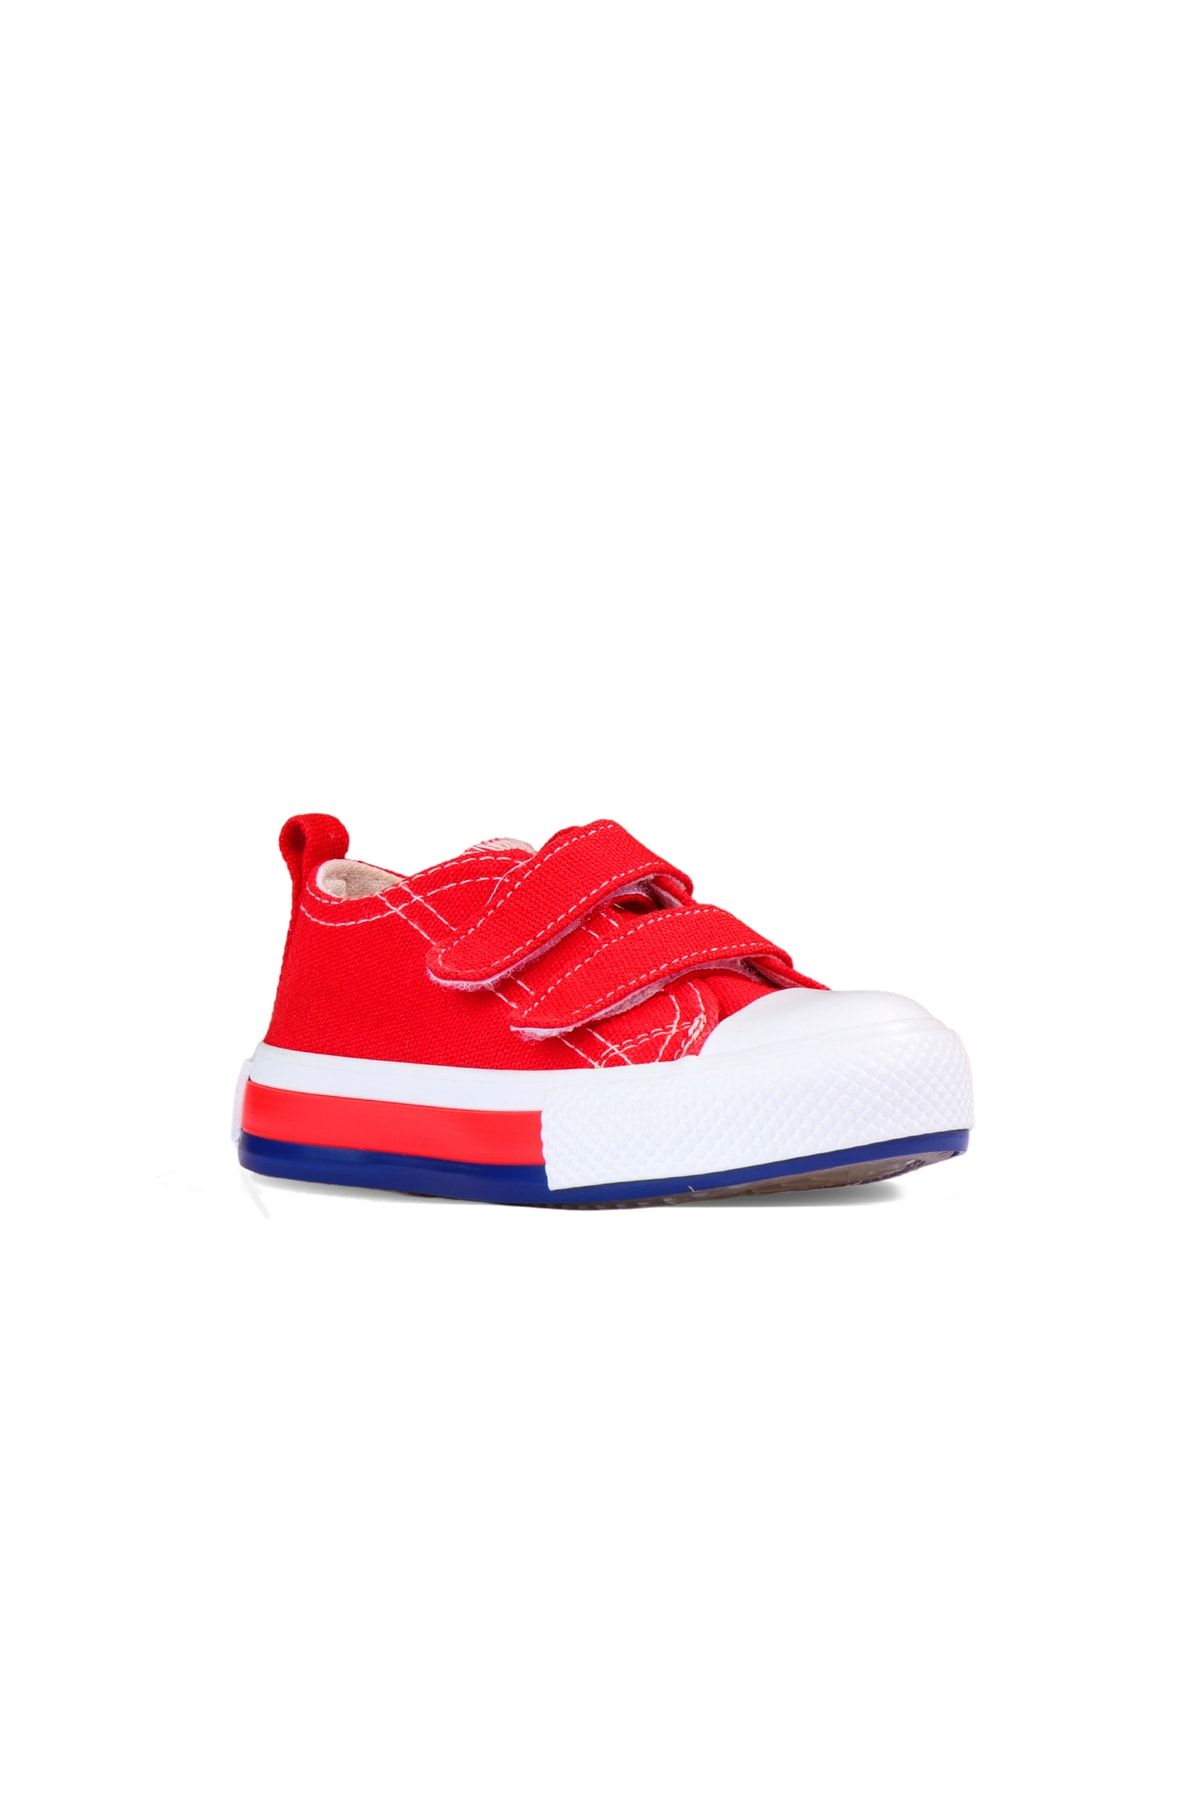 Vicco Pacho Basic Unisex Çocuk Kırmızı Spor Ayakkabı